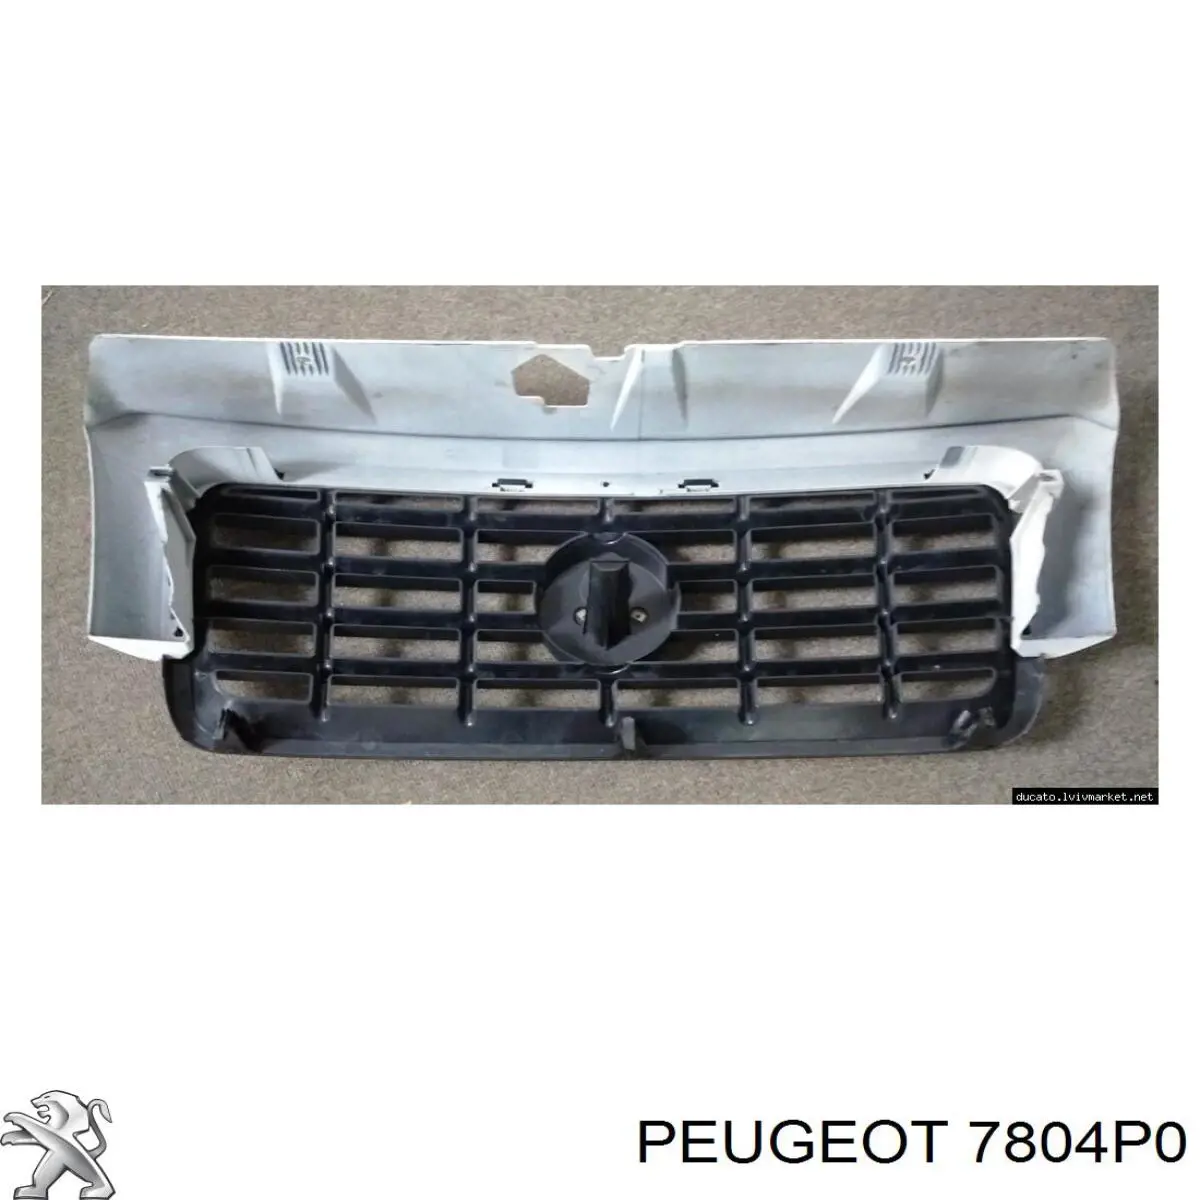 7804P0 Peugeot/Citroen placa sobreposta (carcaça de grelha do radiador)